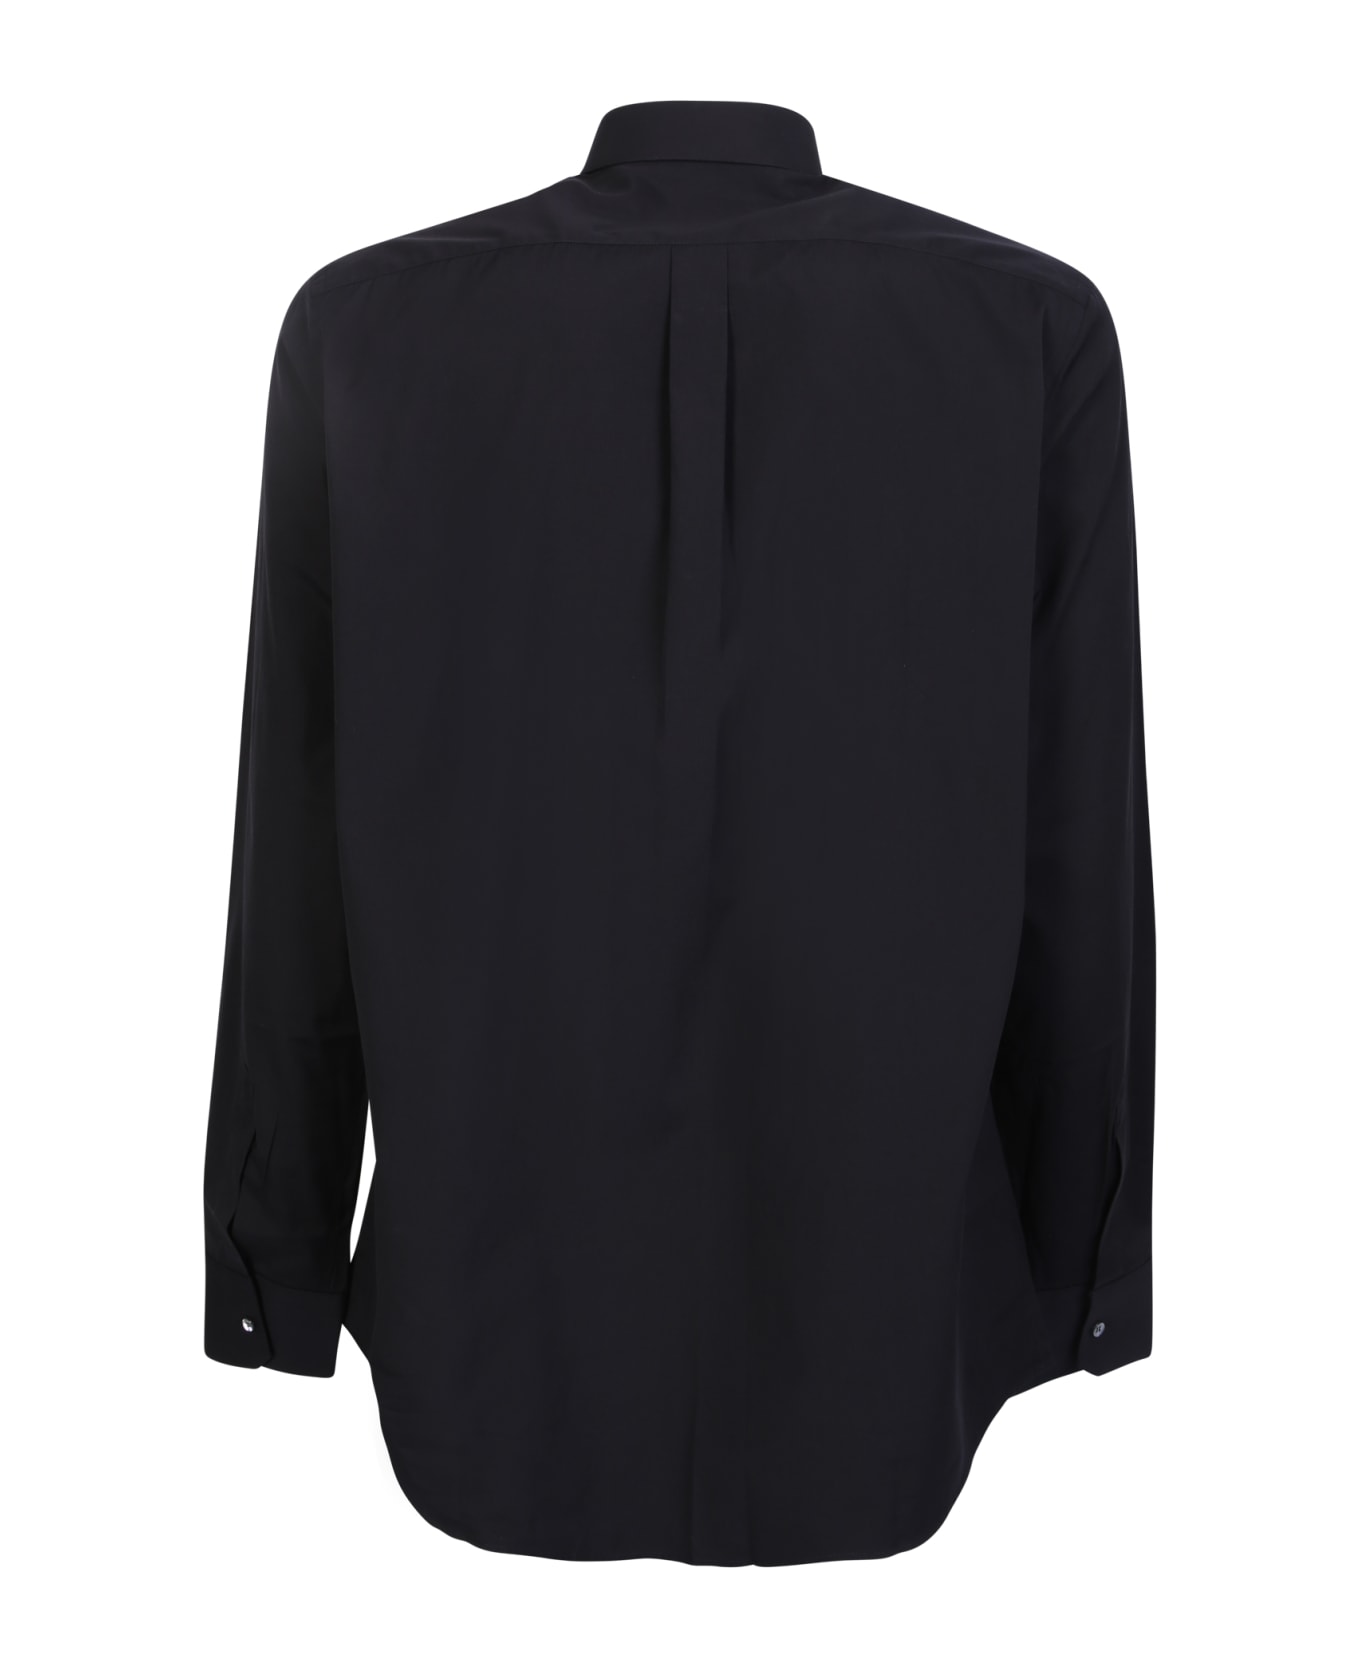 Dolce & Gabbana Long Sleeved Buttoned Shirt - Black